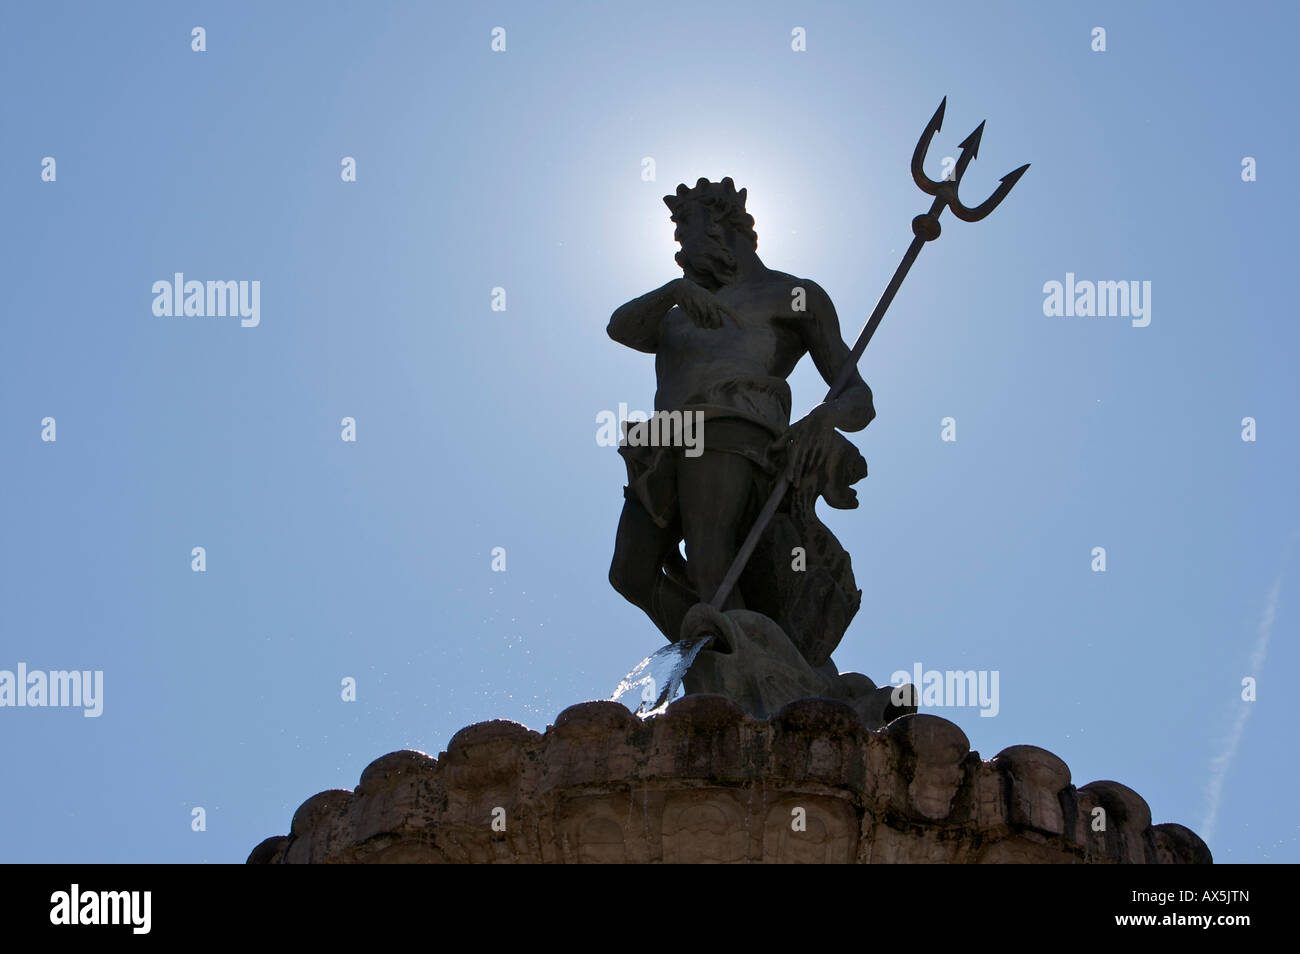 Statue de Neptune, Fontaine de Neptune, sur la place de la cathédrale de trente, dans le nord de l'Italie, en Europe Banque D'Images